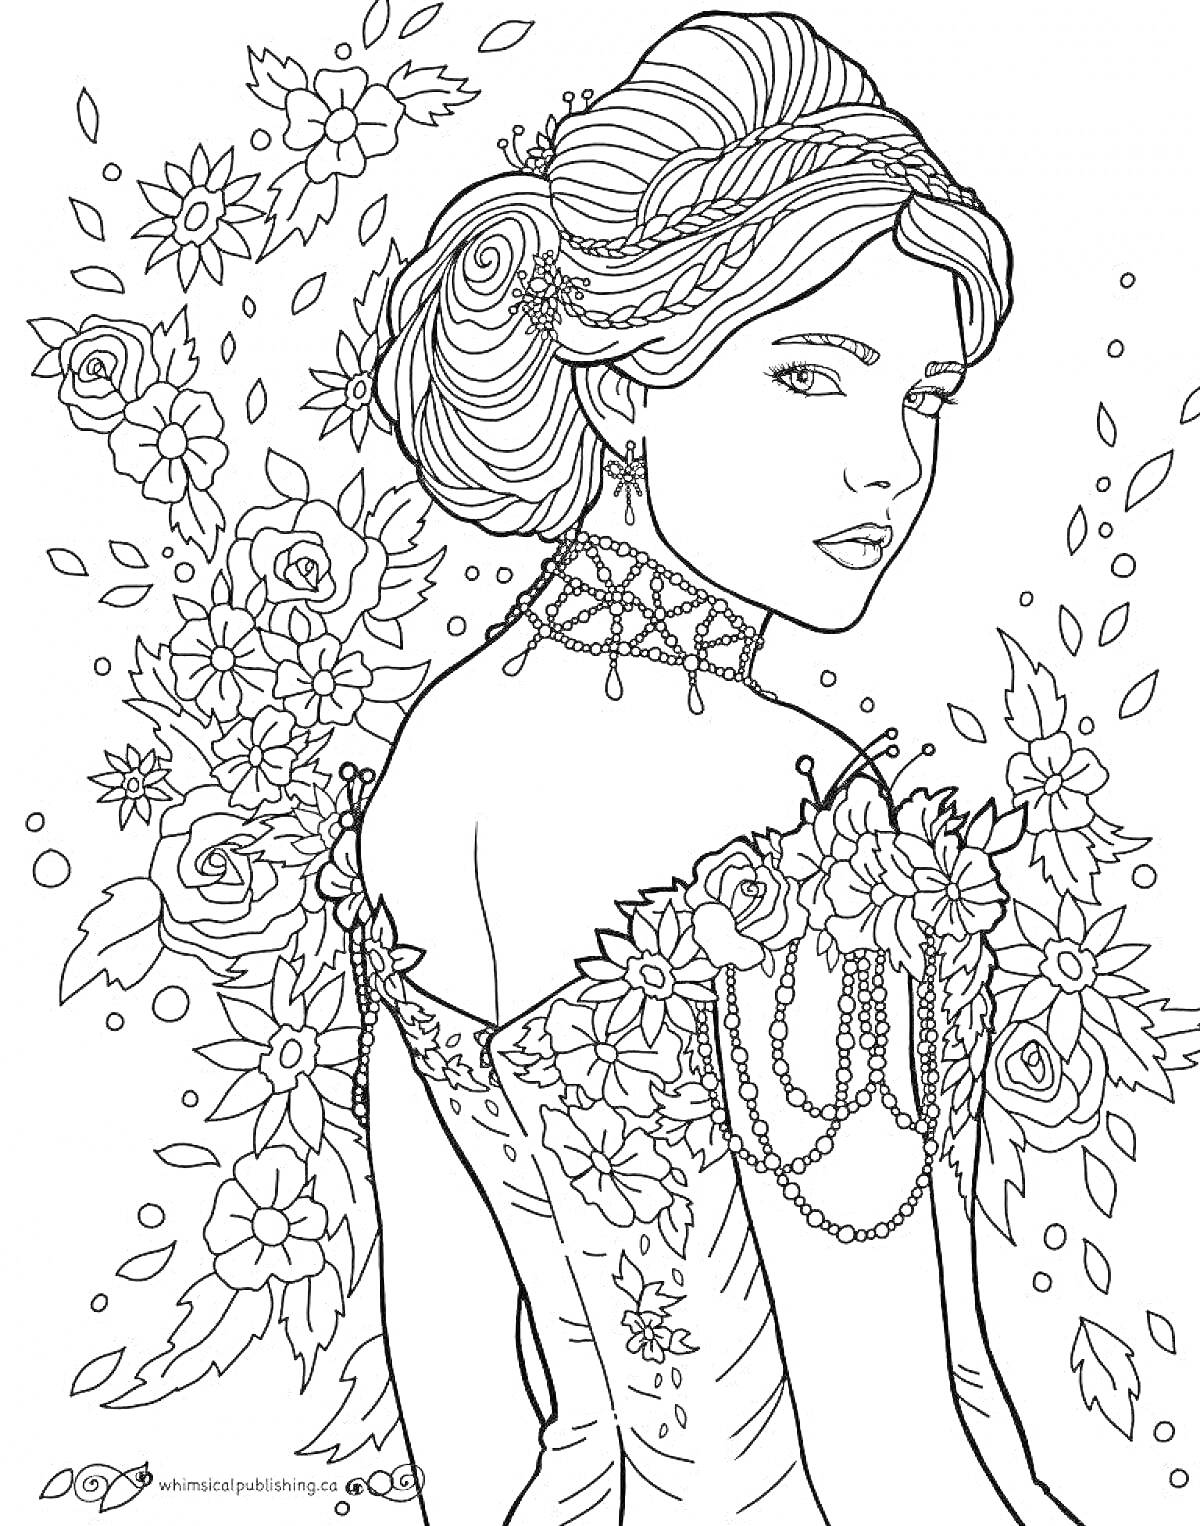 Раскраска Портрет девушки в платье с цветочным орнаментом, цветы на заднем плане